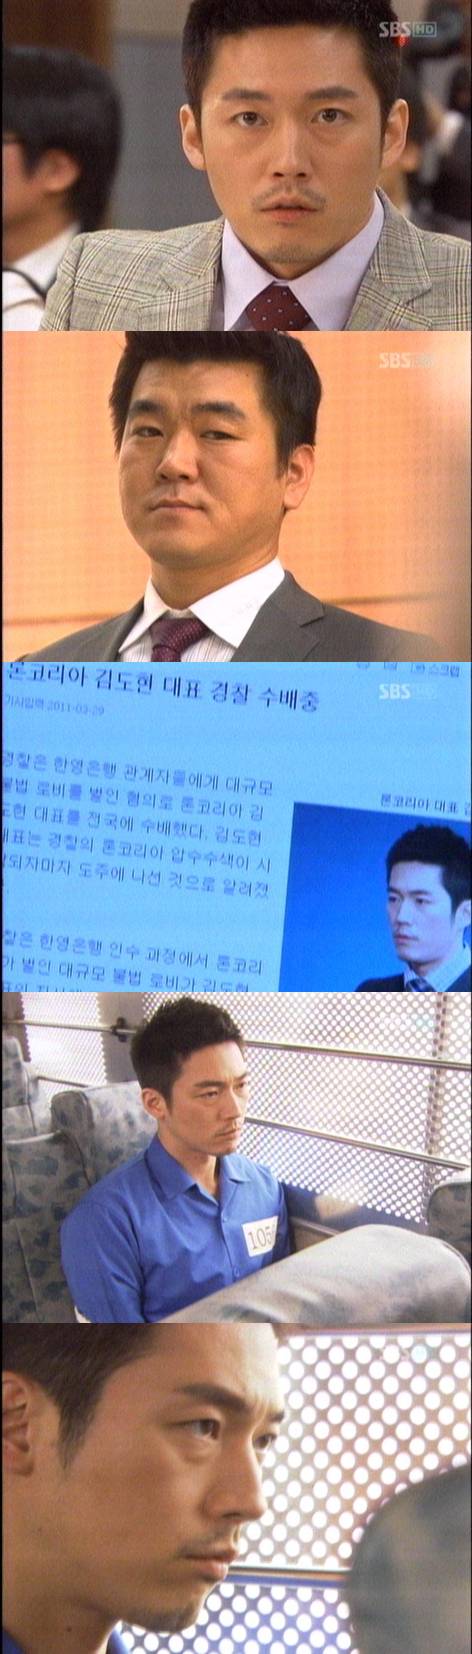 `마이더스` 장혁, 김희애 버림 받고 감옥行 `충격`